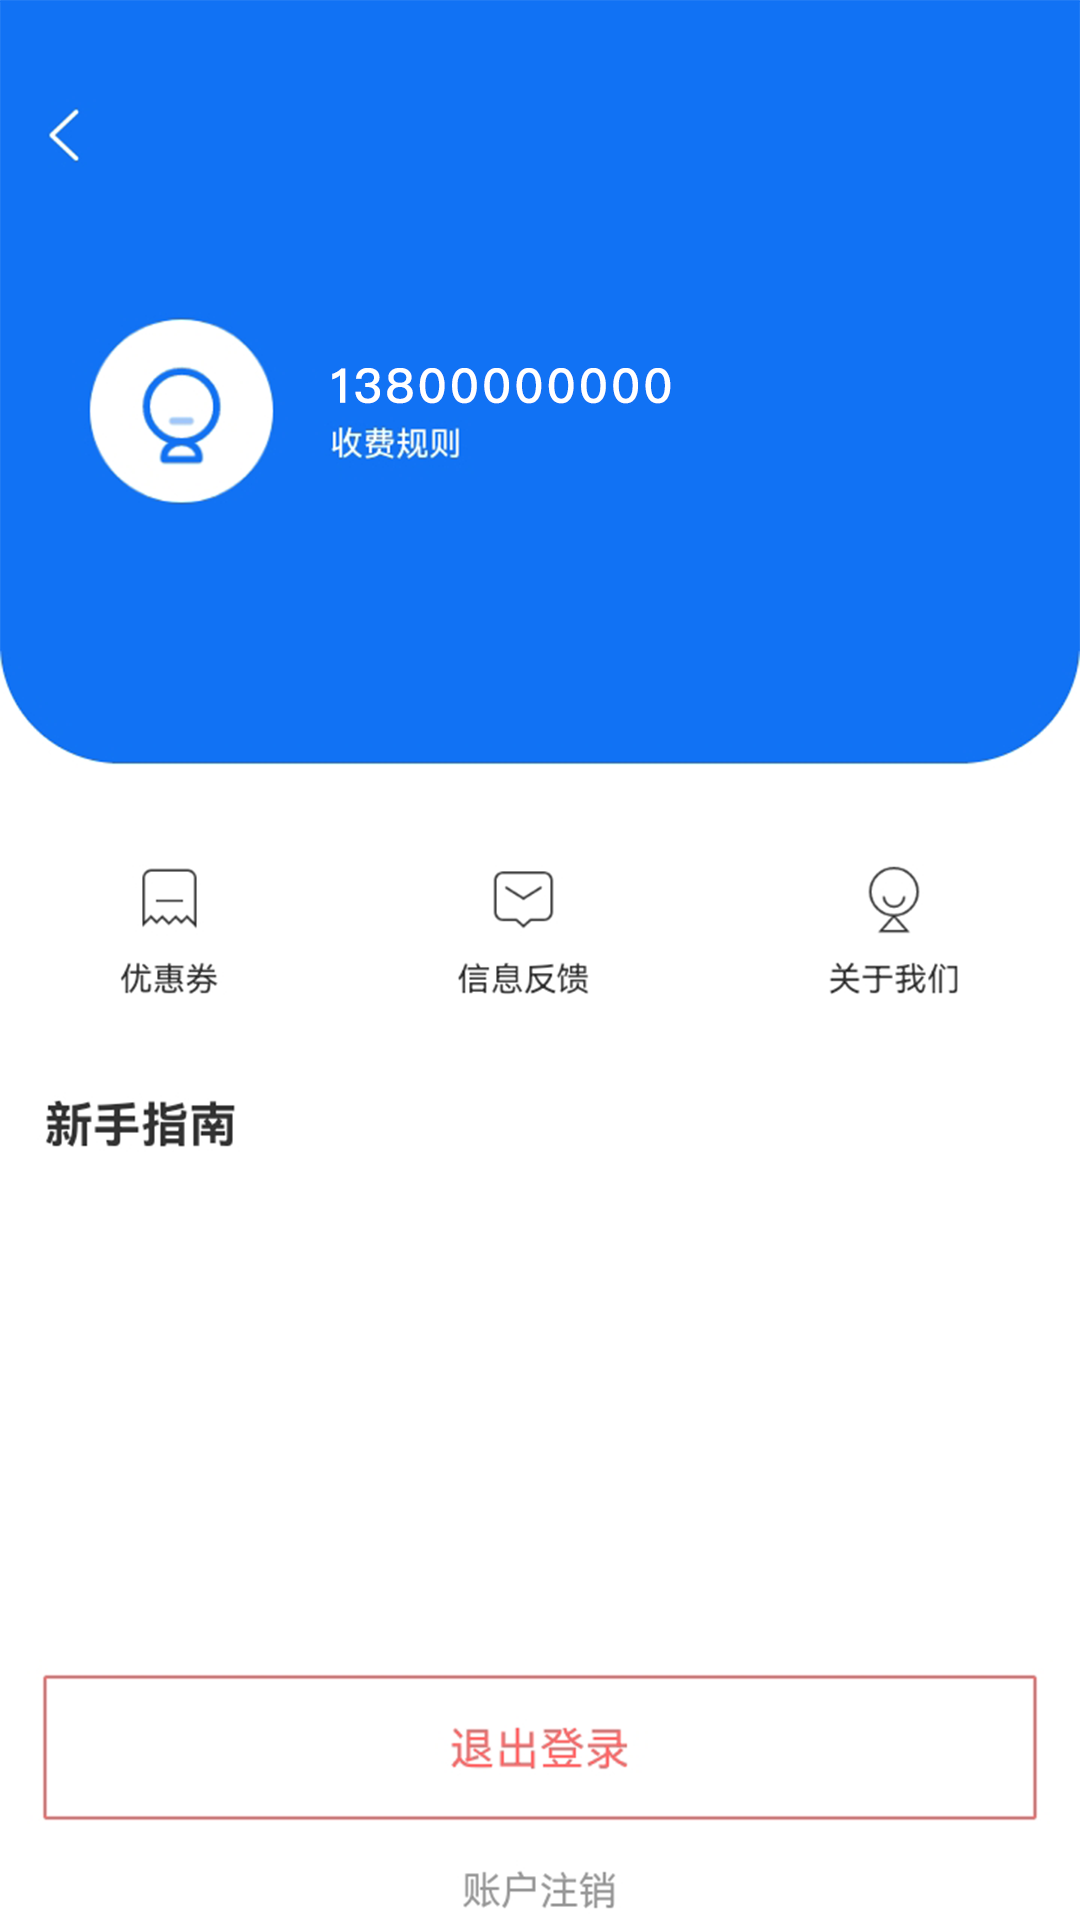 惠停服务app下载,惠停服务智慧停车app官方版 v2.3.0805